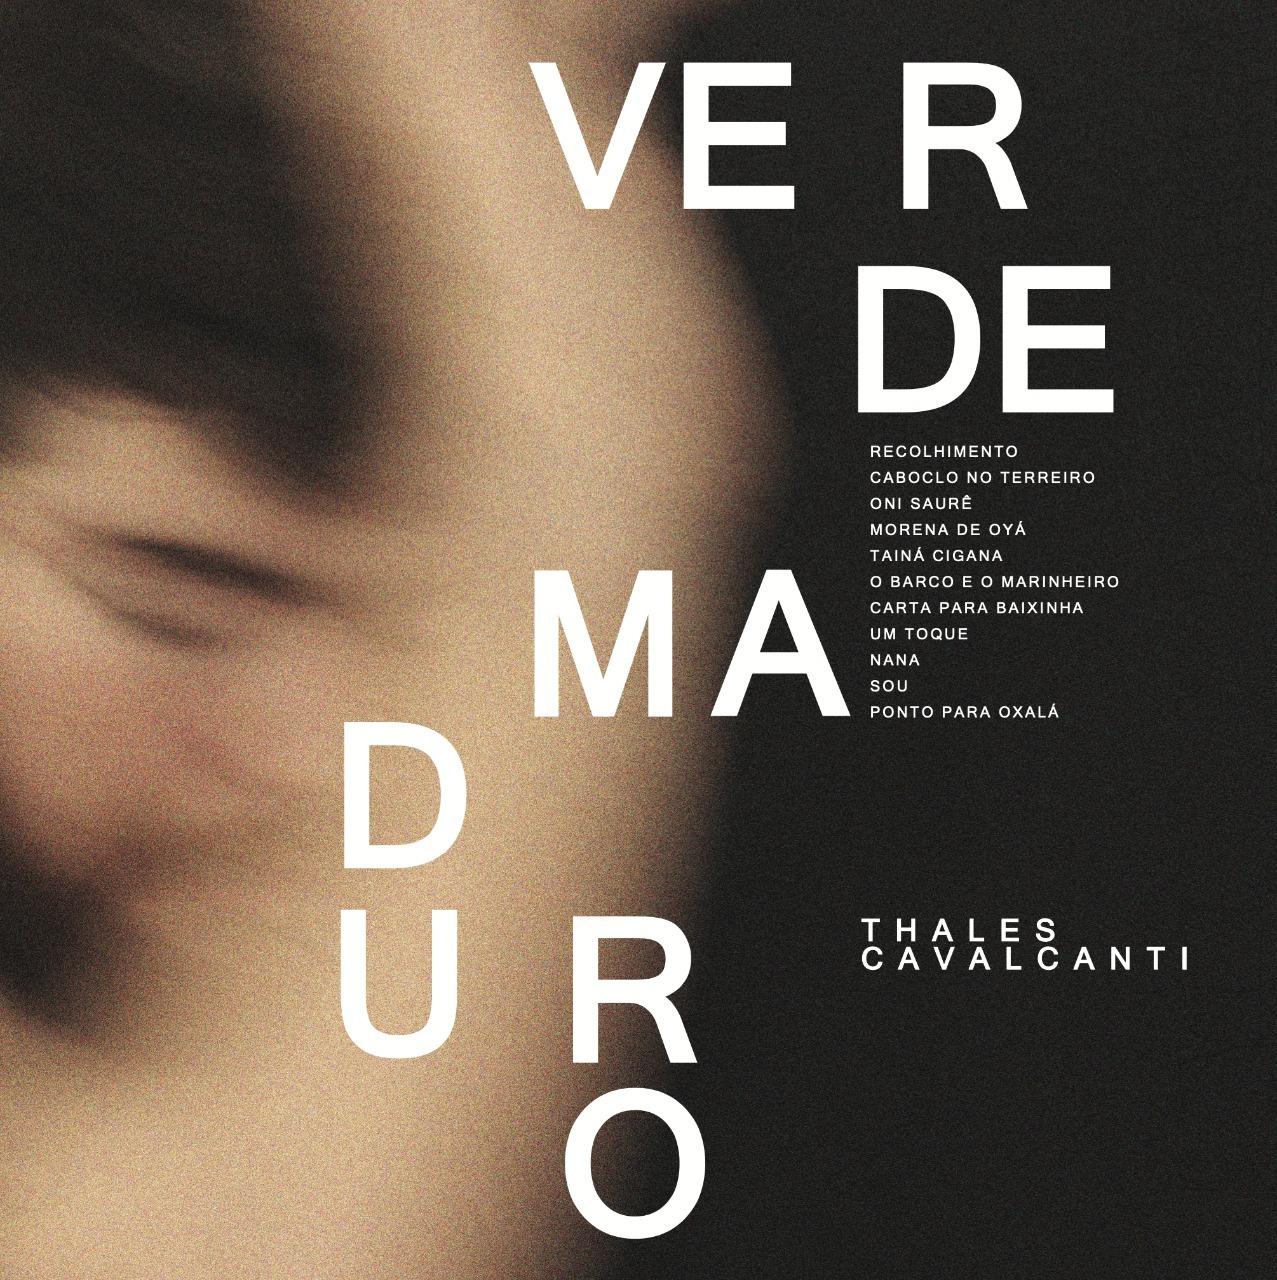 Thales Cavalcanti lança “Verde Maduro”, álbum de estreia autoral, em um mix personalíssimo de tambor com beat